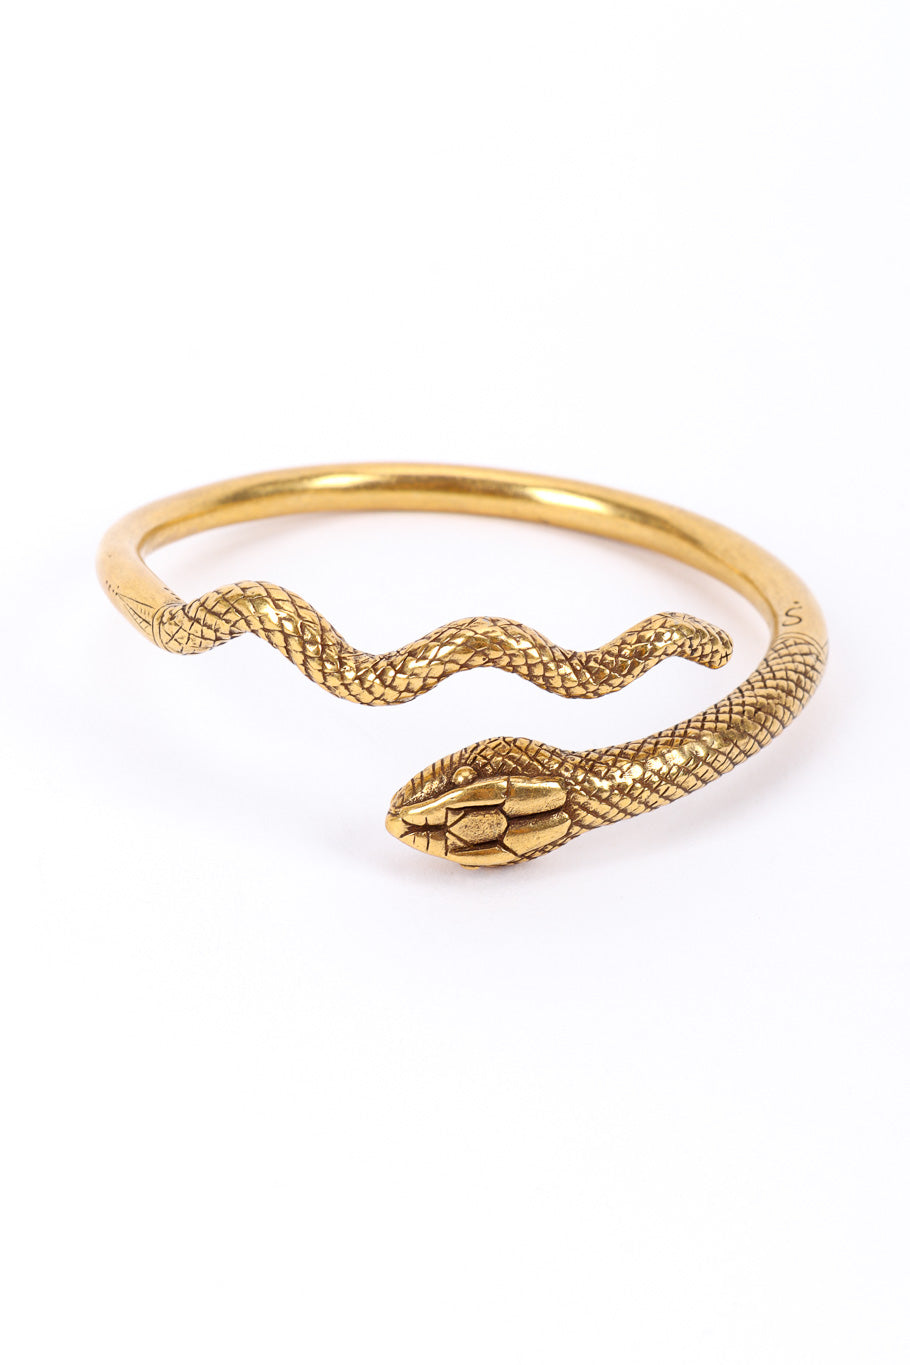 Metropolitan Museum of Art Serpent Spiral Bracelet front view @recessla